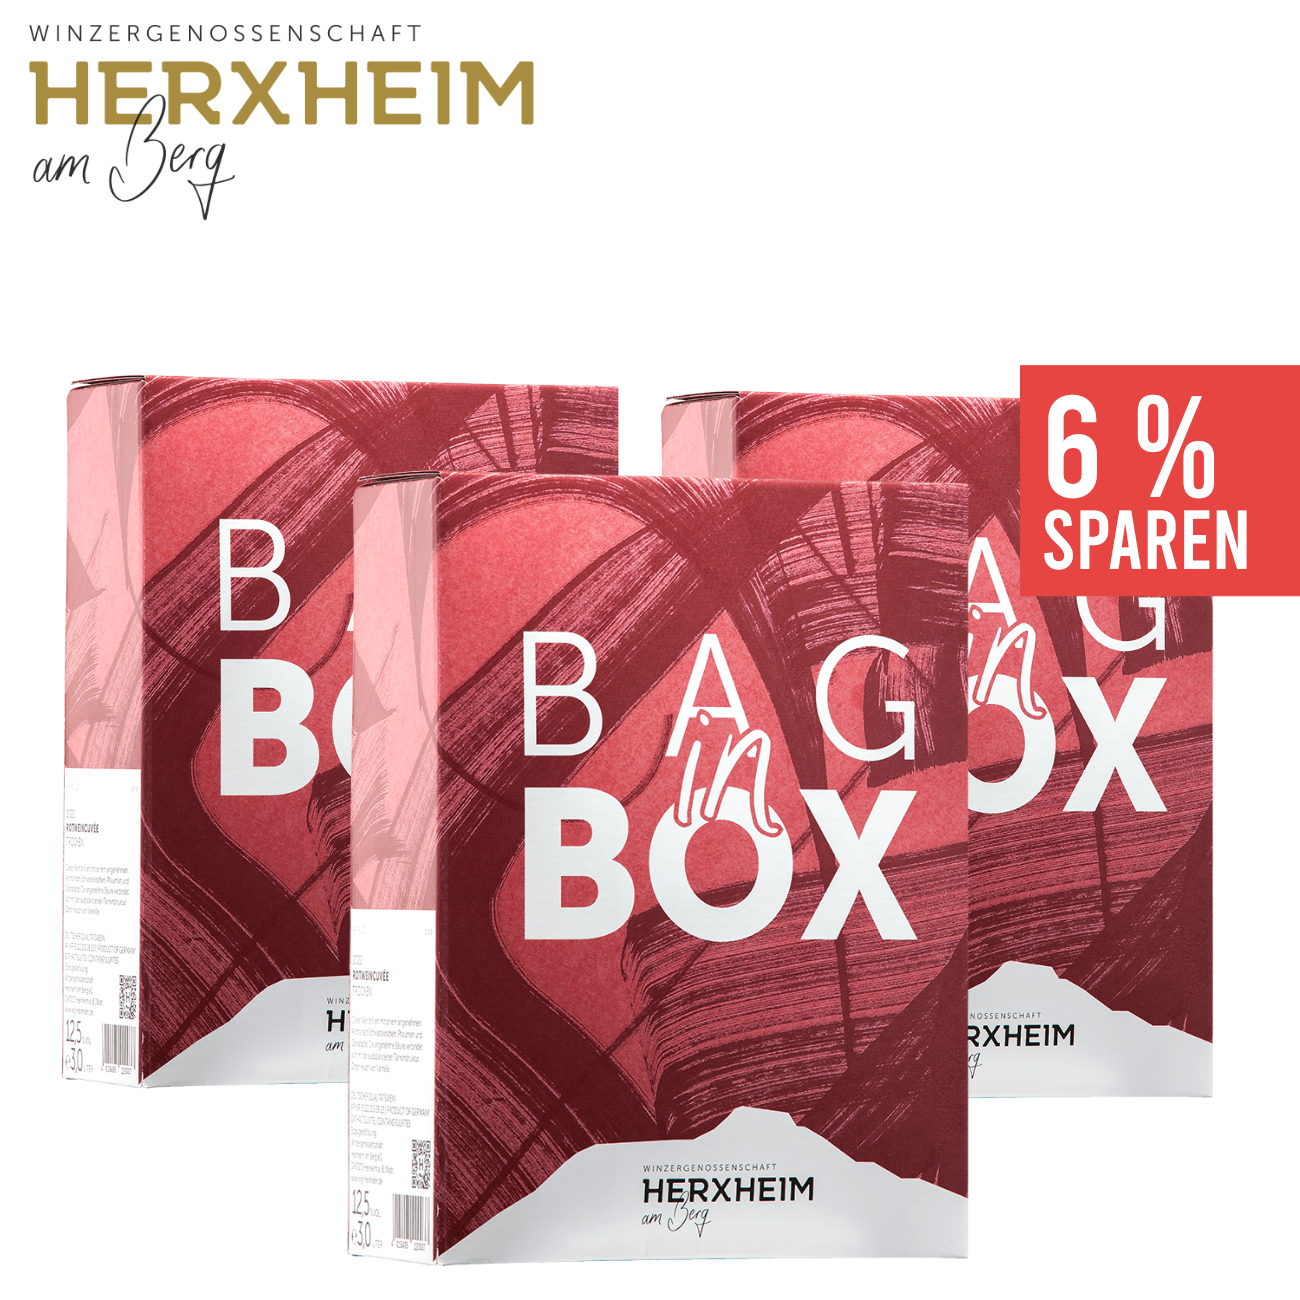 3 x Rotweincuvée trocken Bag in Box 3,0 L - WG Herxheim am Berg